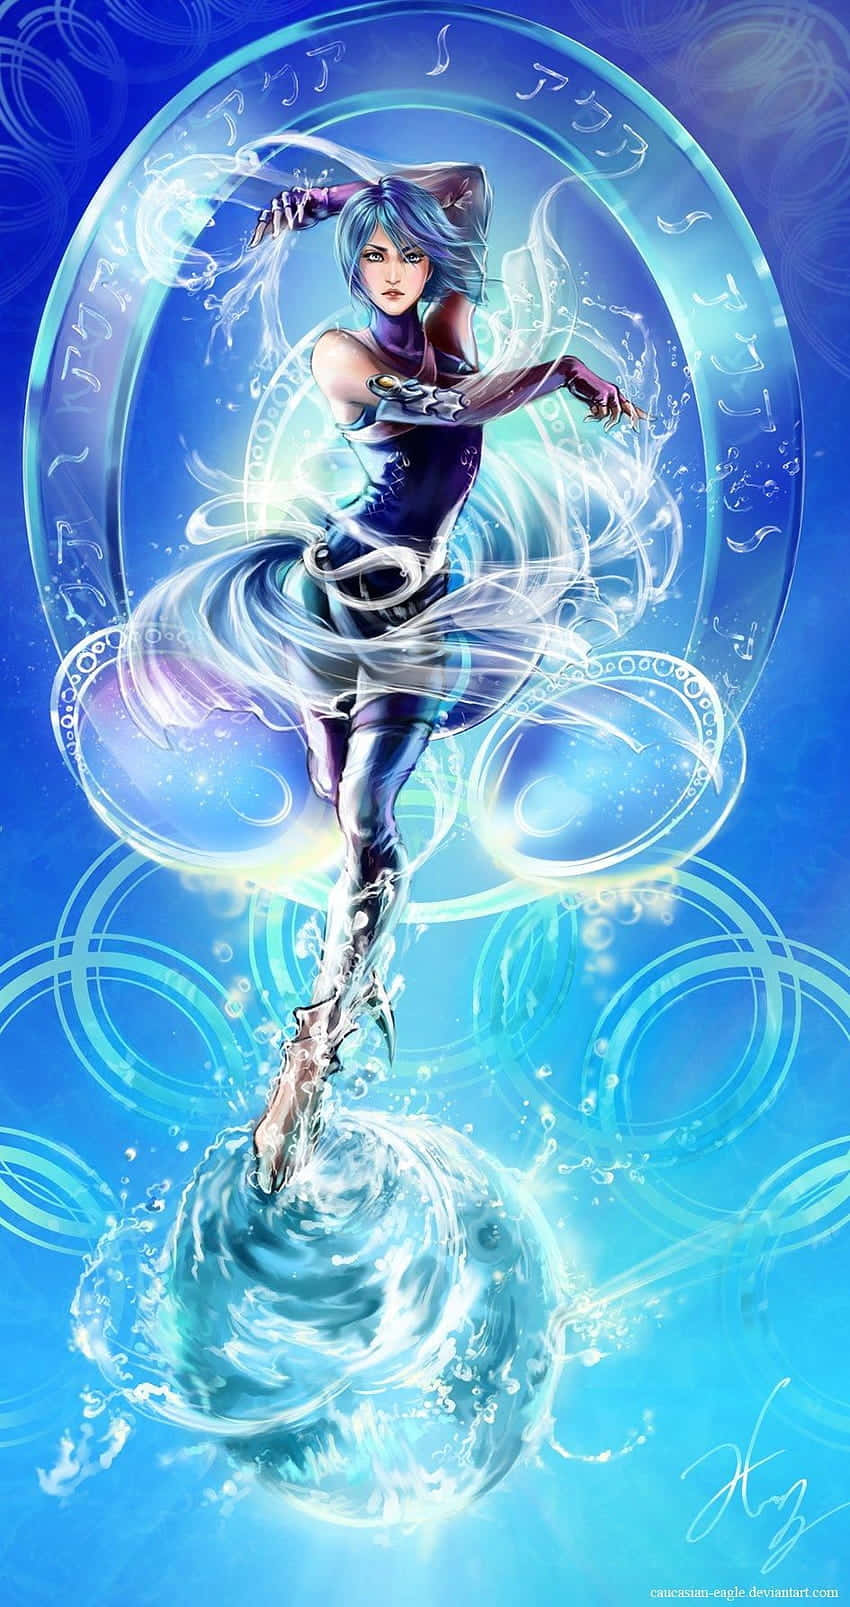 Aqua,die Mutige Heldin Aus Kingdom Hearts. Wallpaper